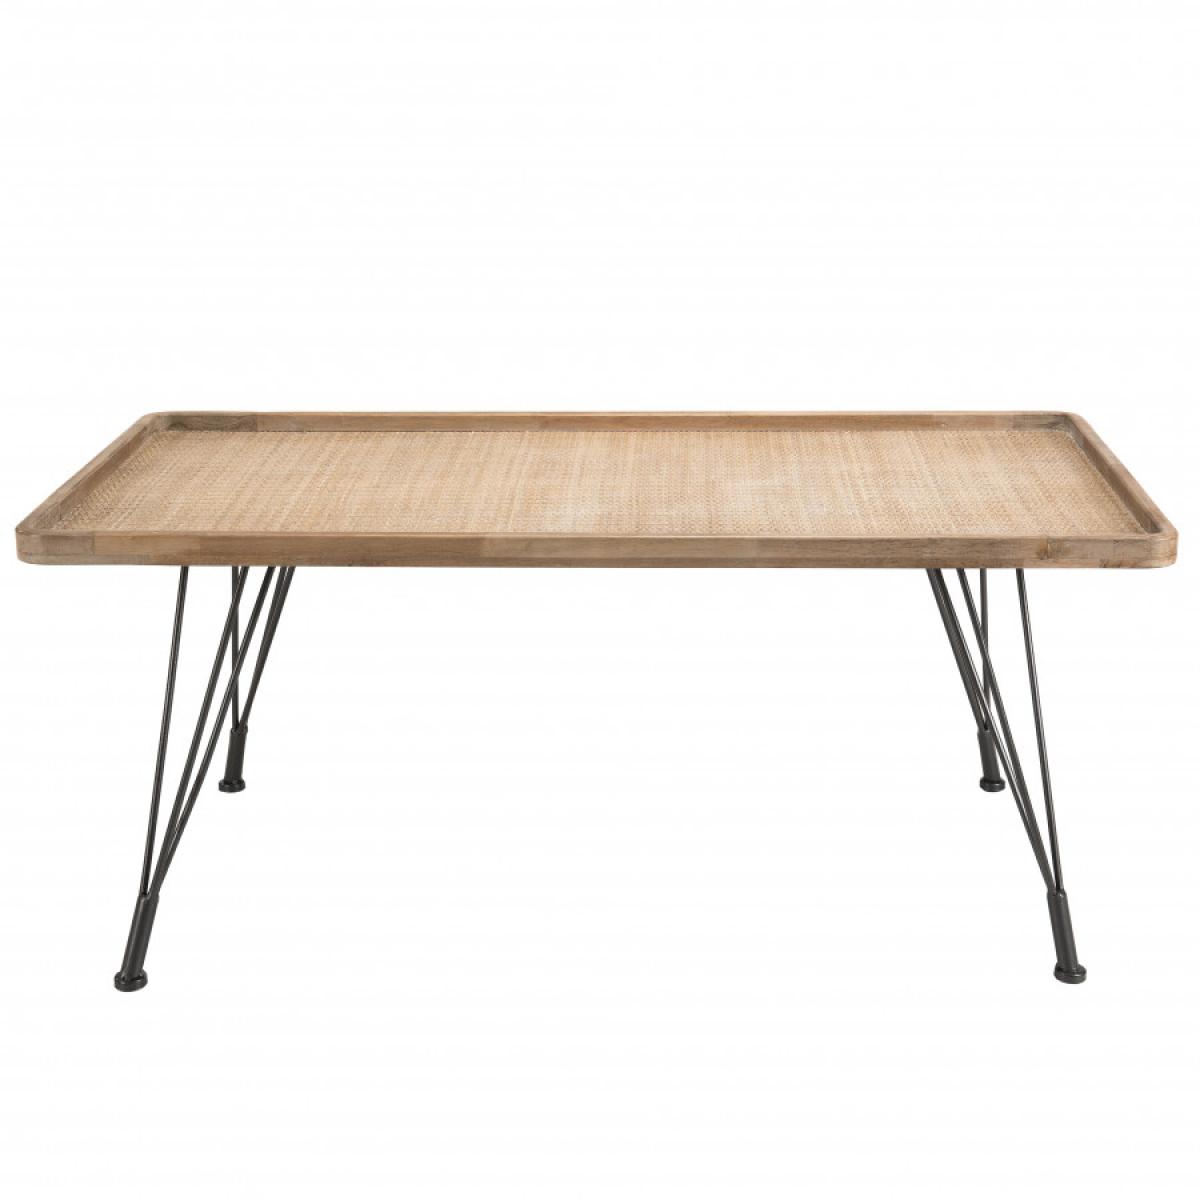 DORIANE - Table basse rectangulaire plateau cannage naturel pieds métal noir